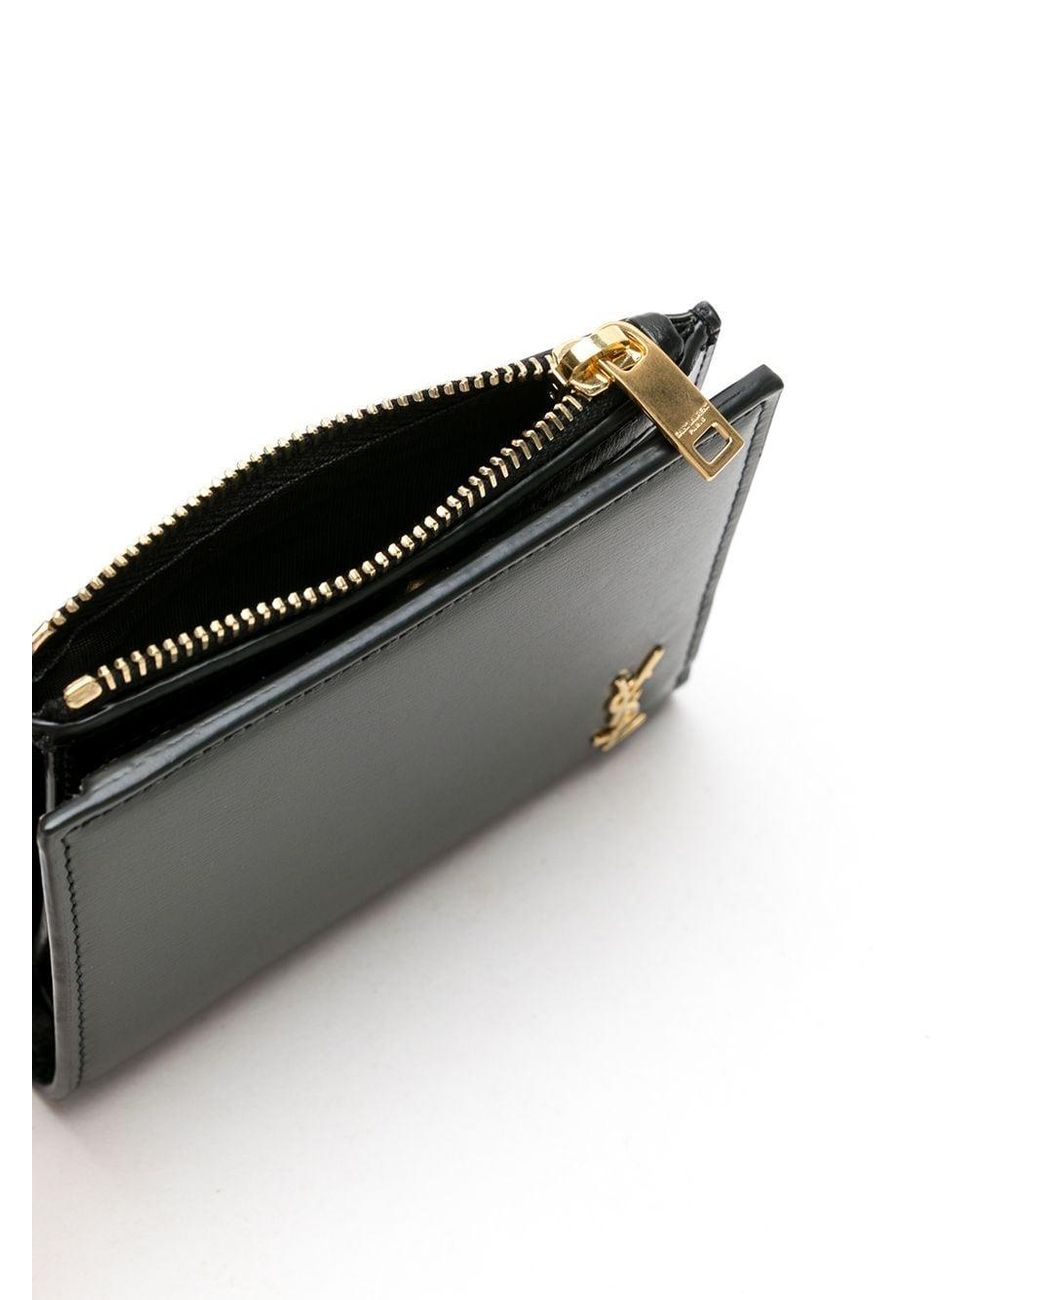 Saint Laurent Monogram Zip Around Compact Wallet - Black